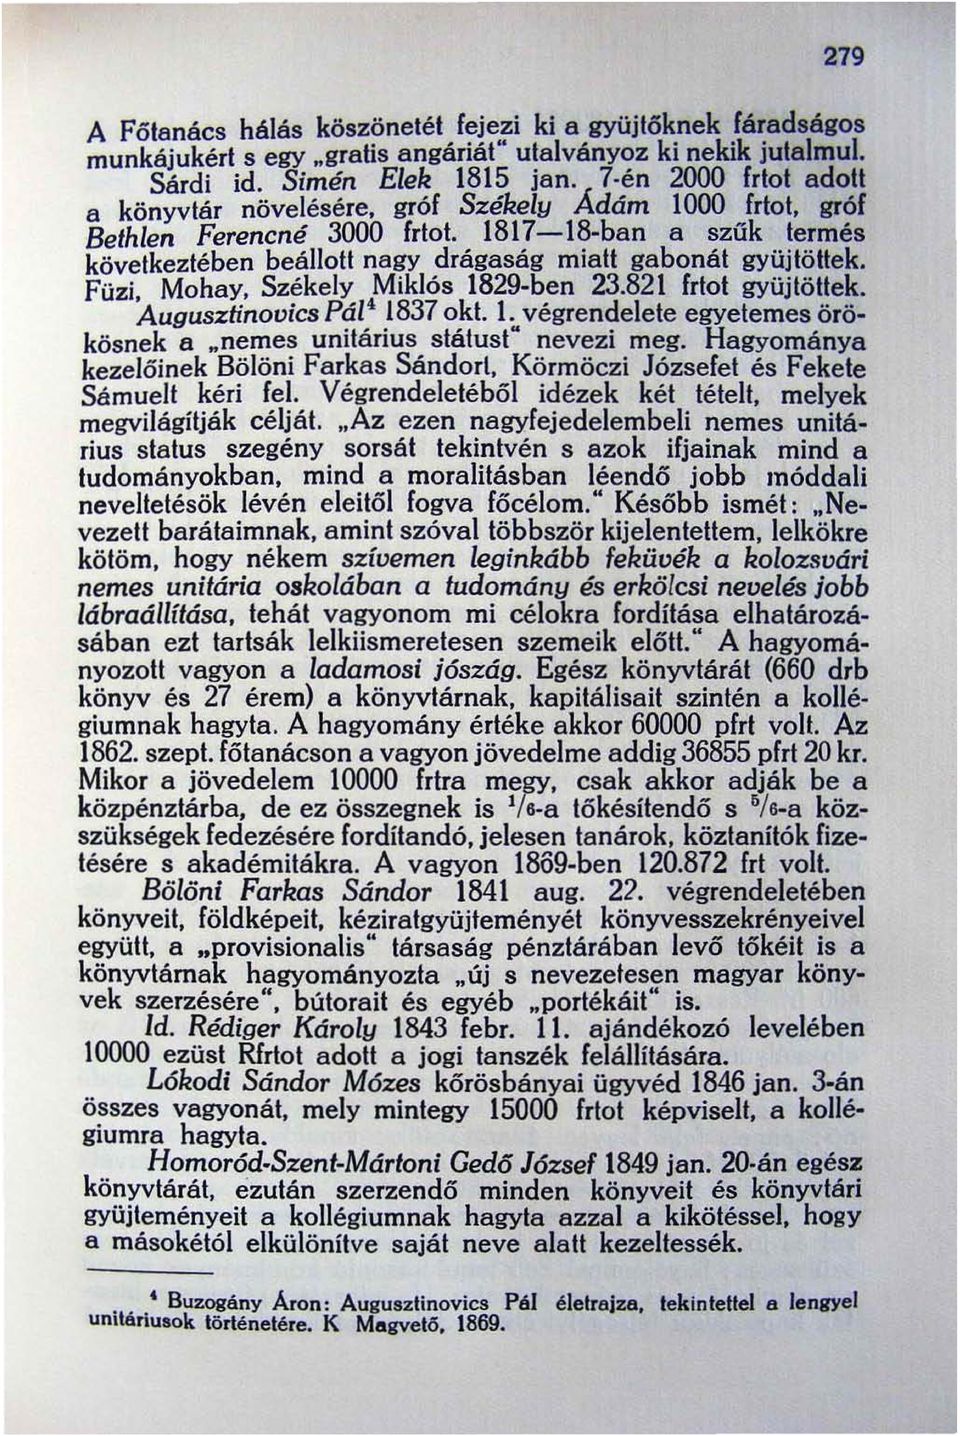 Füzi. Mohay. Székely Miklós 1829-ben 23.821 frtot gyüjtöttek. Augusztinovics Pál' 1837 okt. l. végrendelete egyetemes örökösnek a.nemes unitárius státust" nevezi meg.